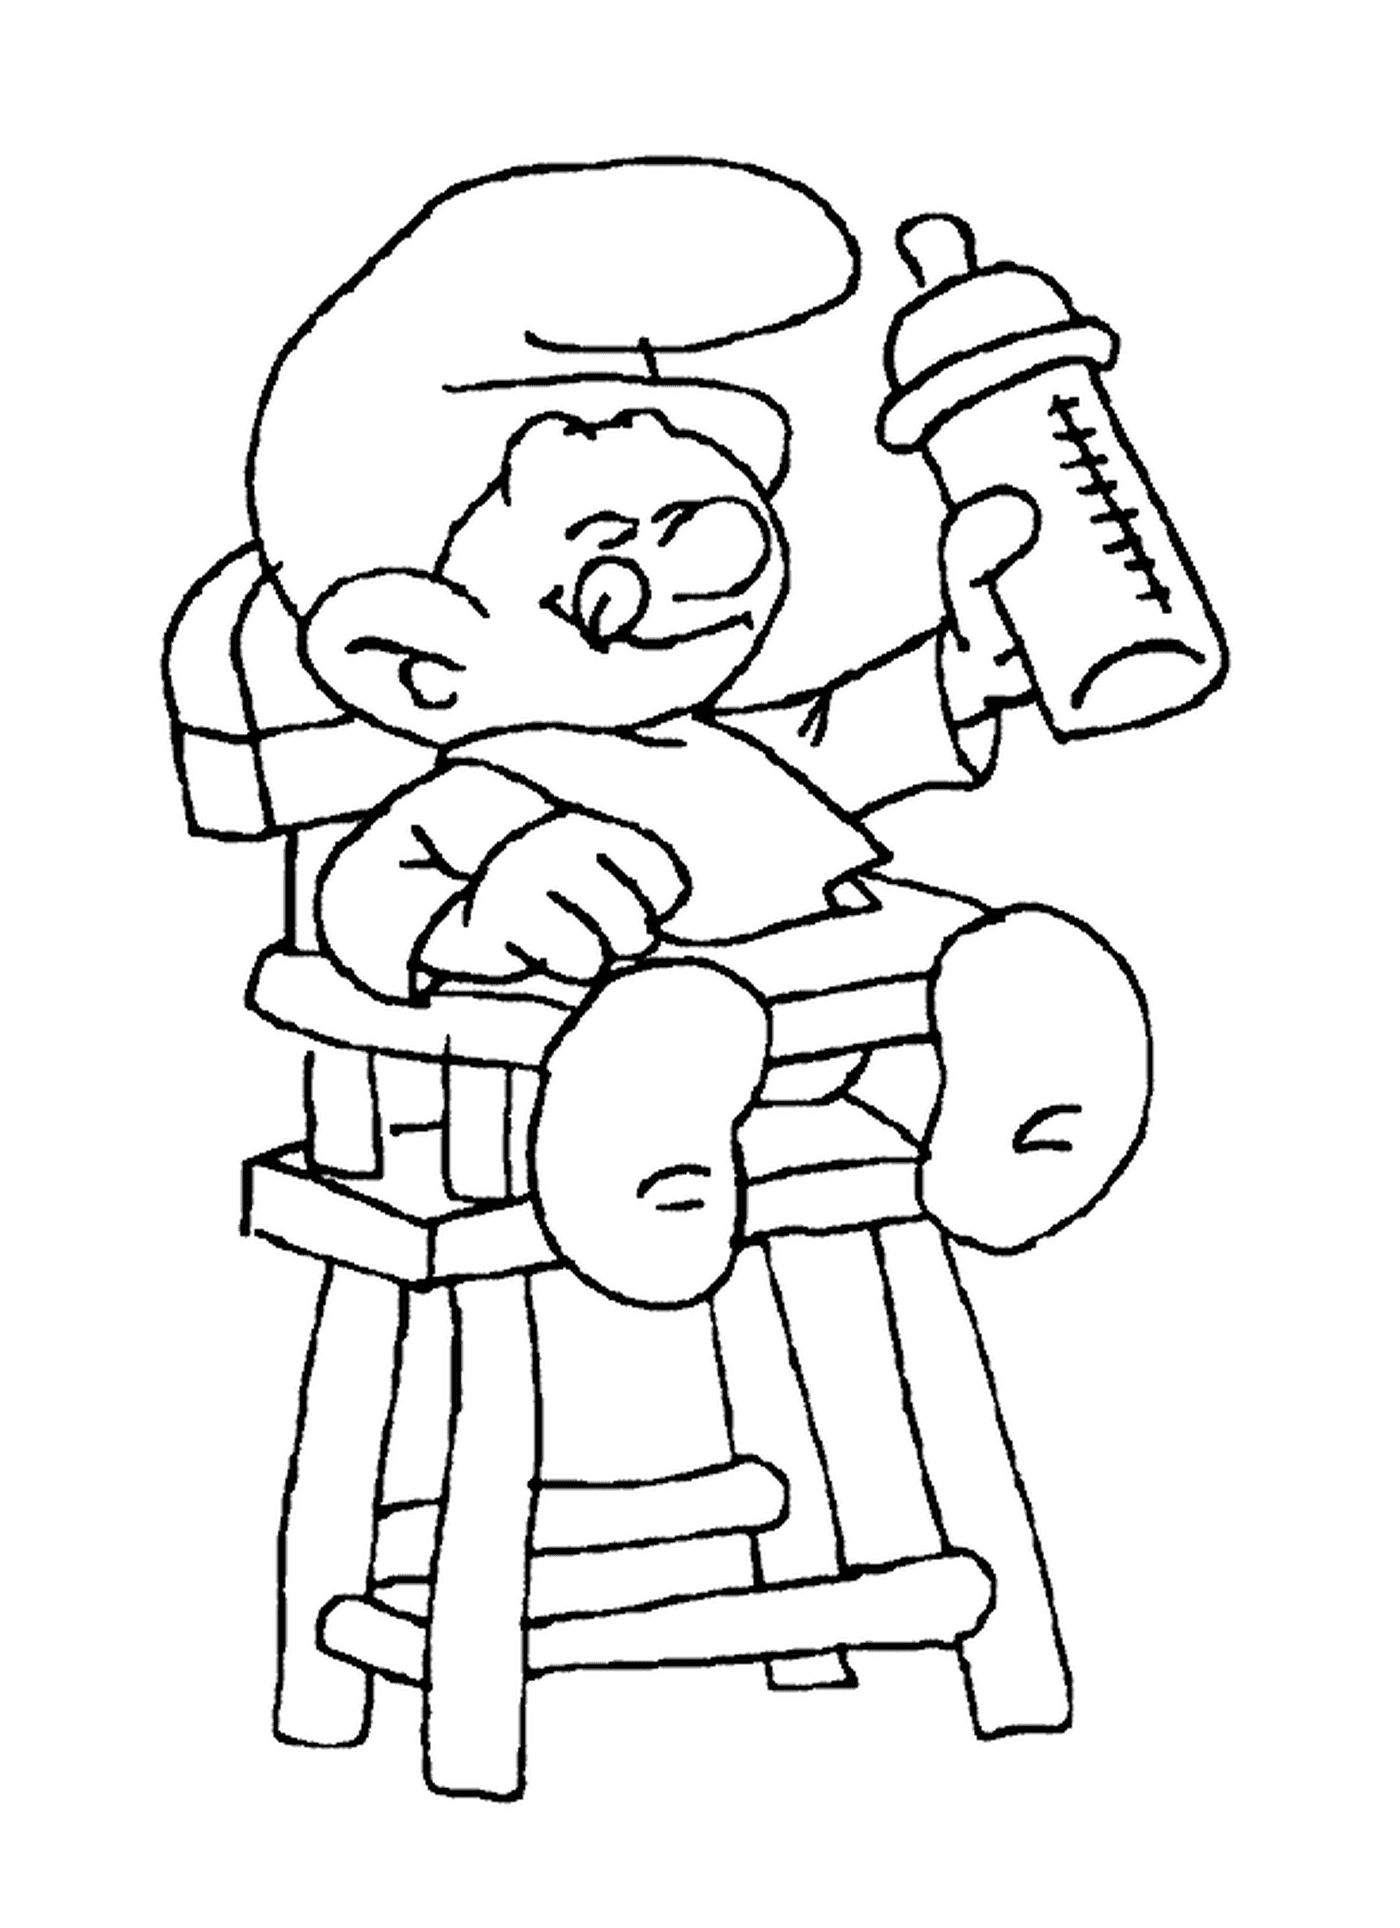  Un bebé pitufo en una silla alta 